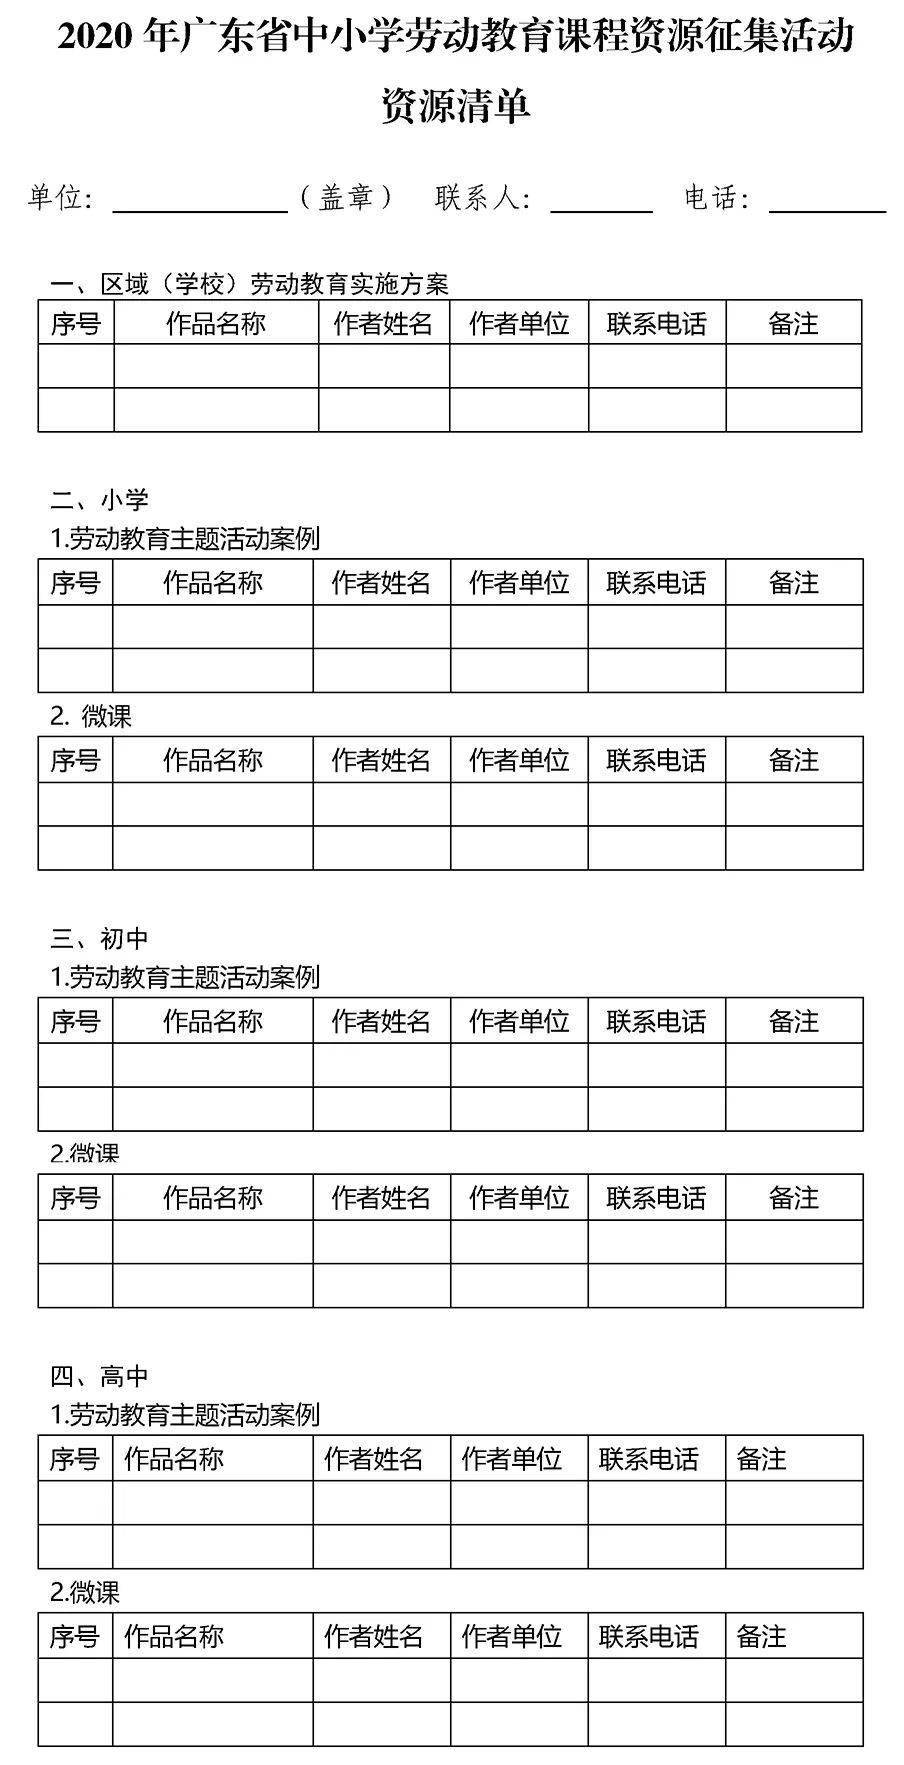 2020广东高考高中学_广东佛山赫赫有名的5所高中,金榜题名时,2020年高考